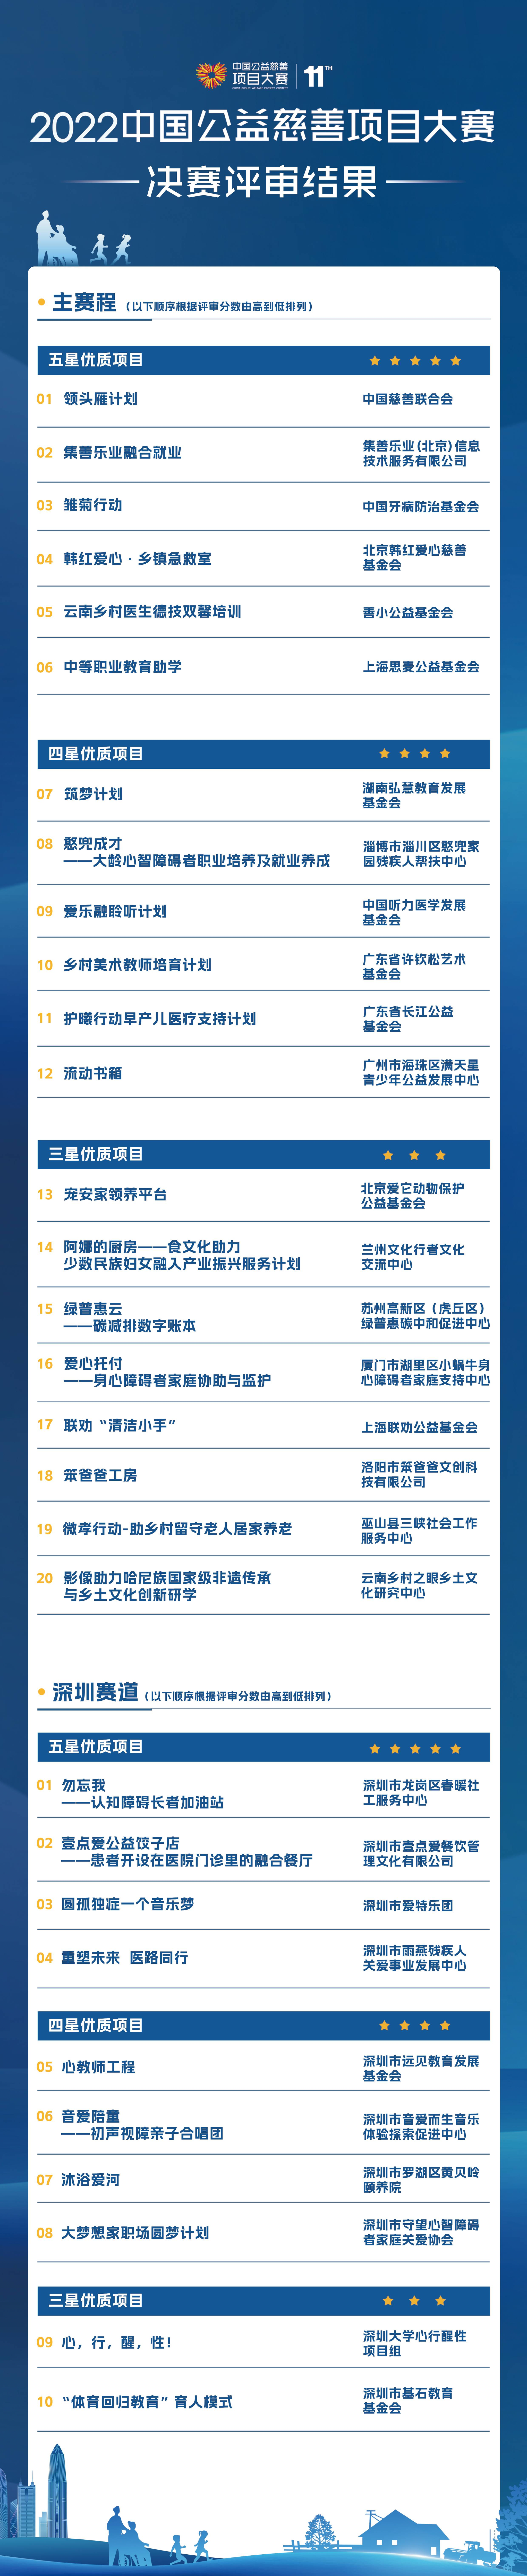 2022中国公益慈善项目大赛决赛评审结果(1).jpg